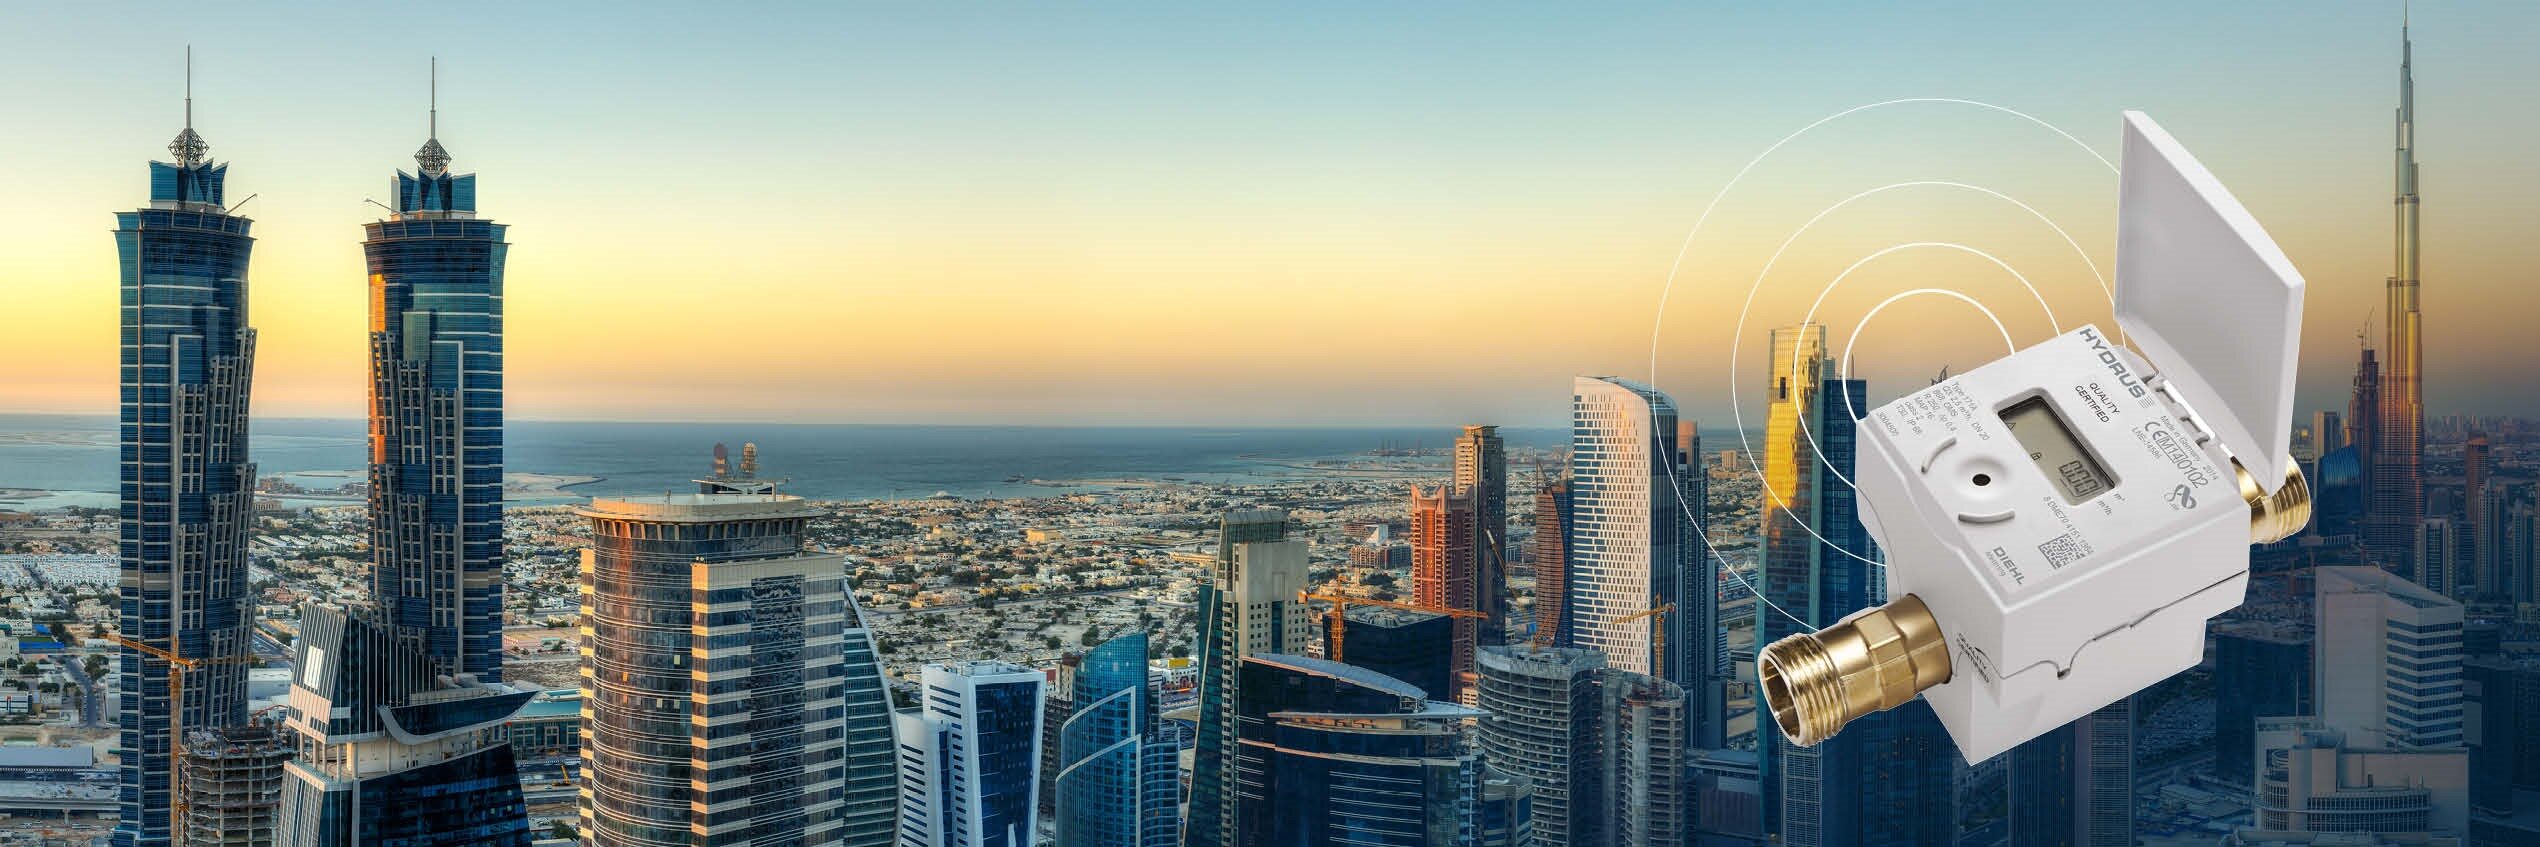 Over 1 million HYDRUS ultrasonic målere: årsagerne til en succeshistorie i UAE